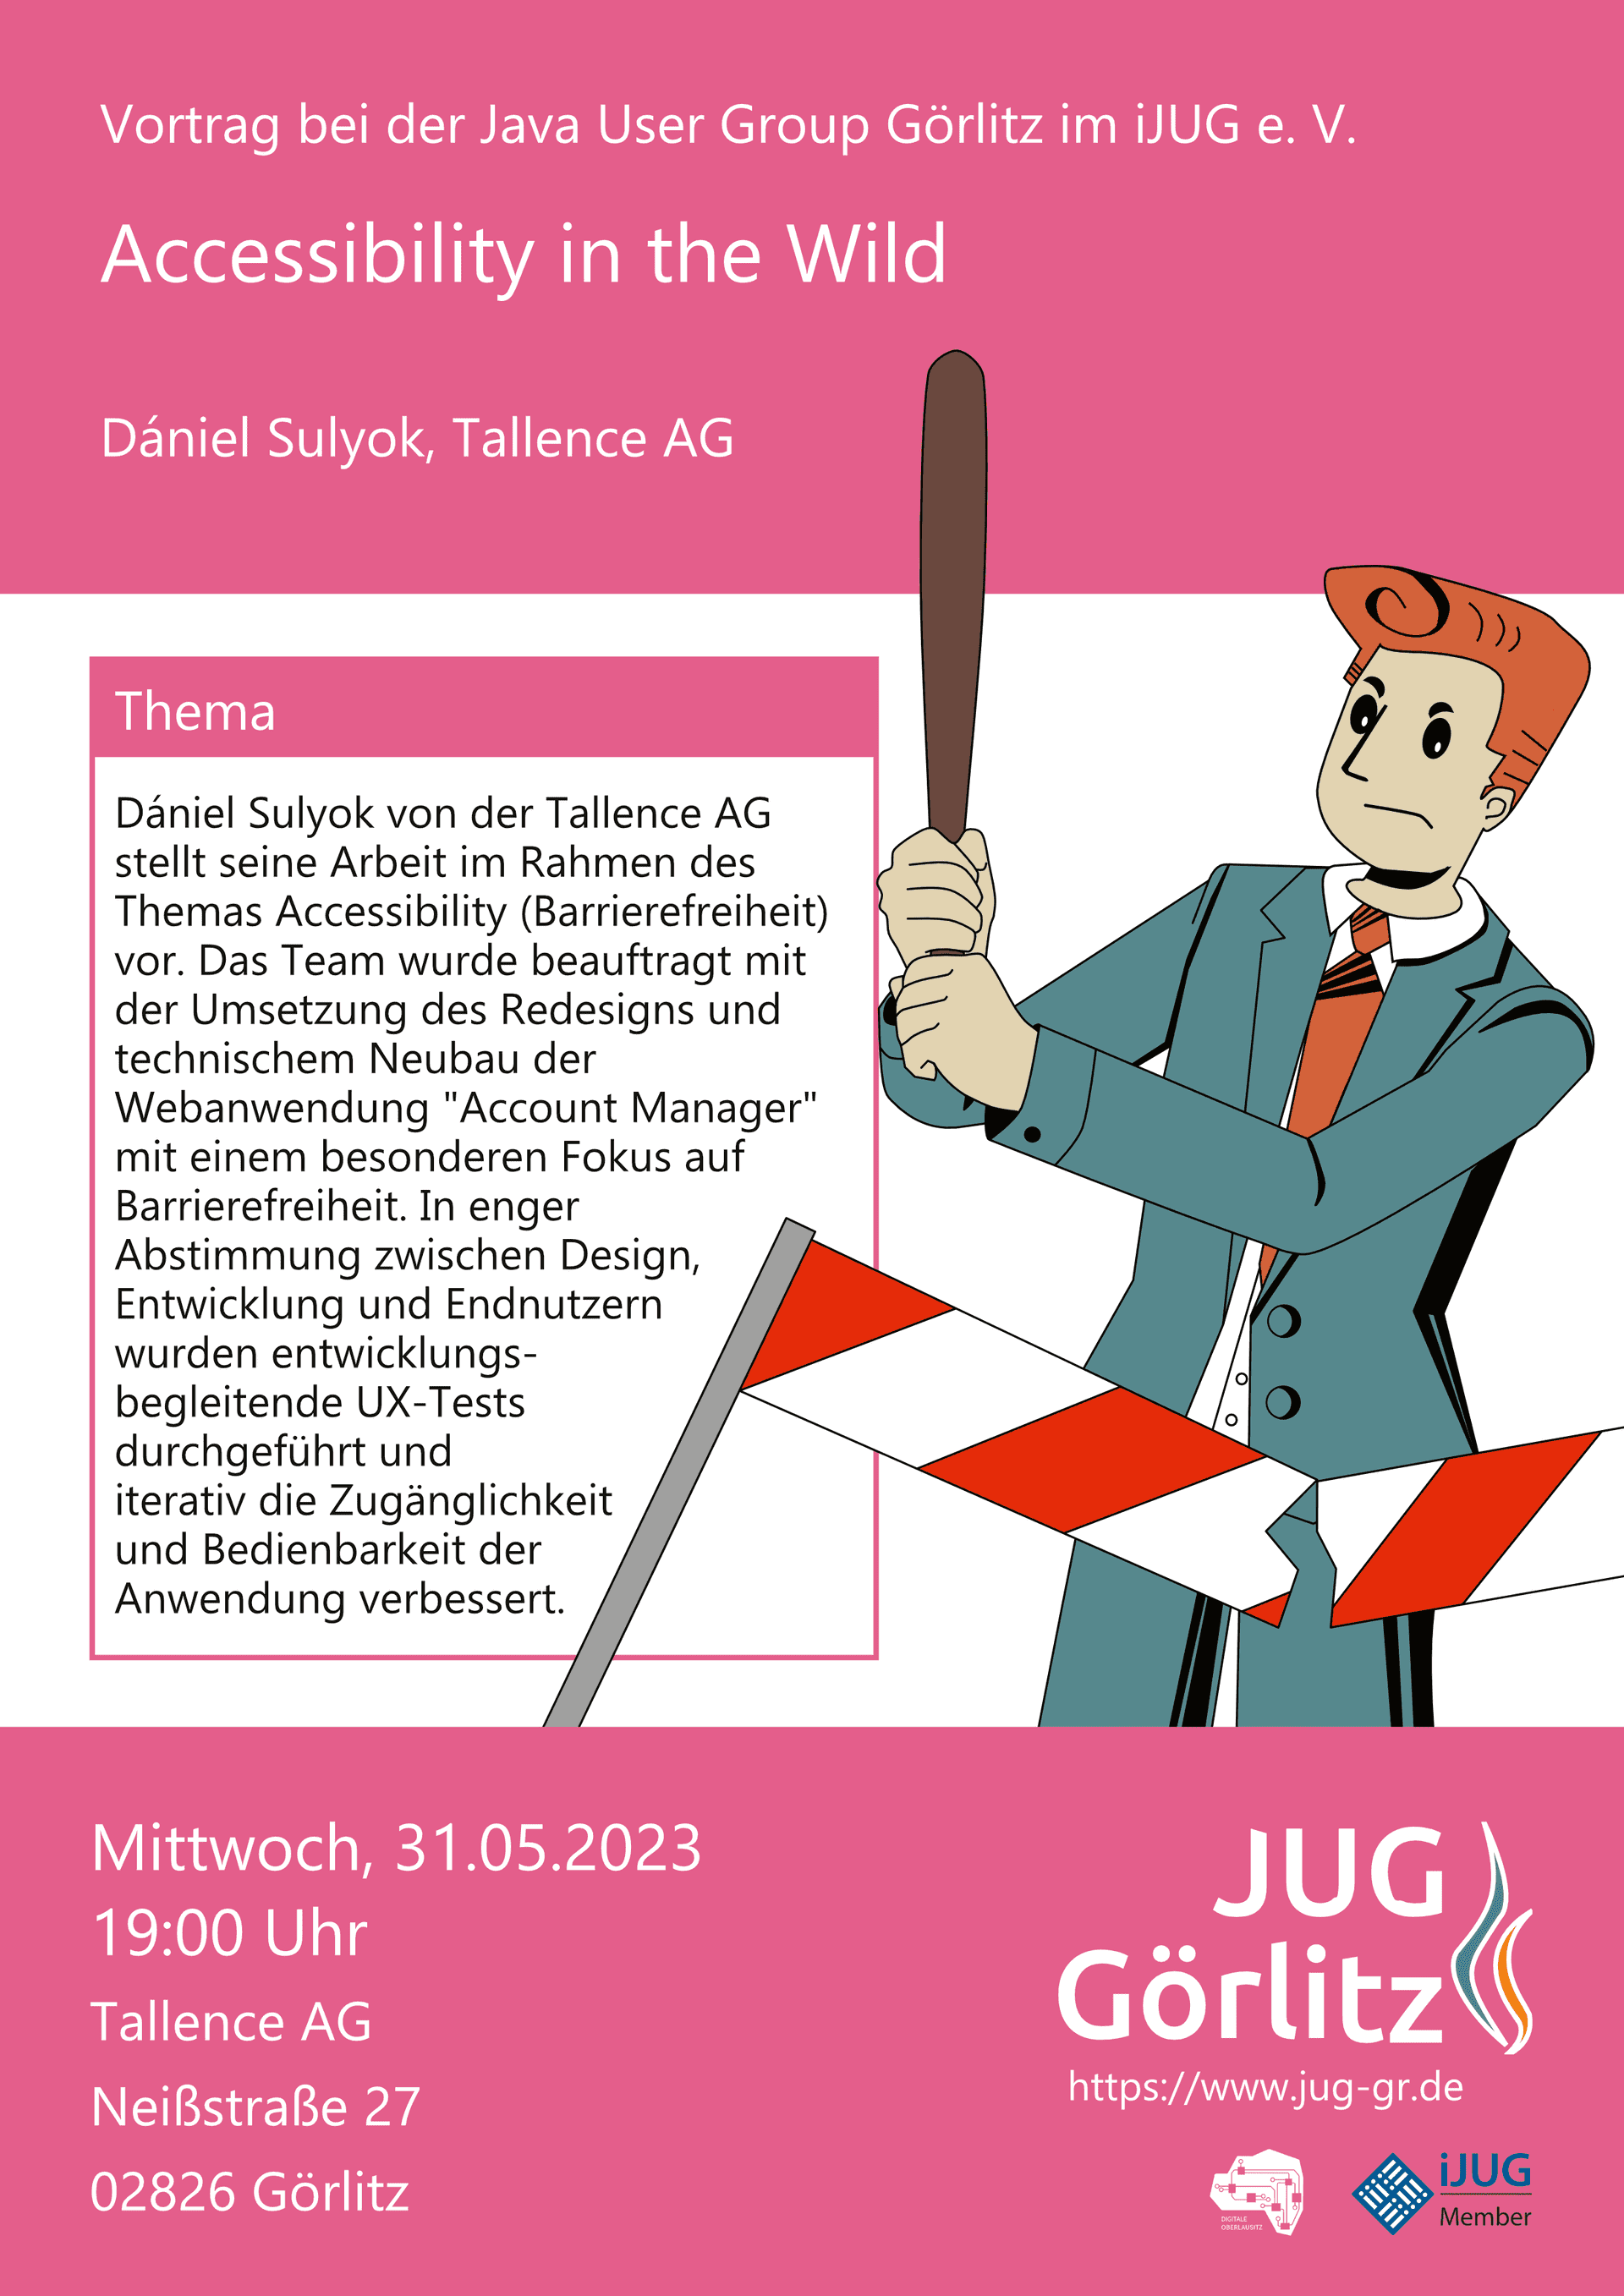 Poster: Jürgen hat einen Baseballschläger in den Händen und zerstört damit eine Verkehrsbake.